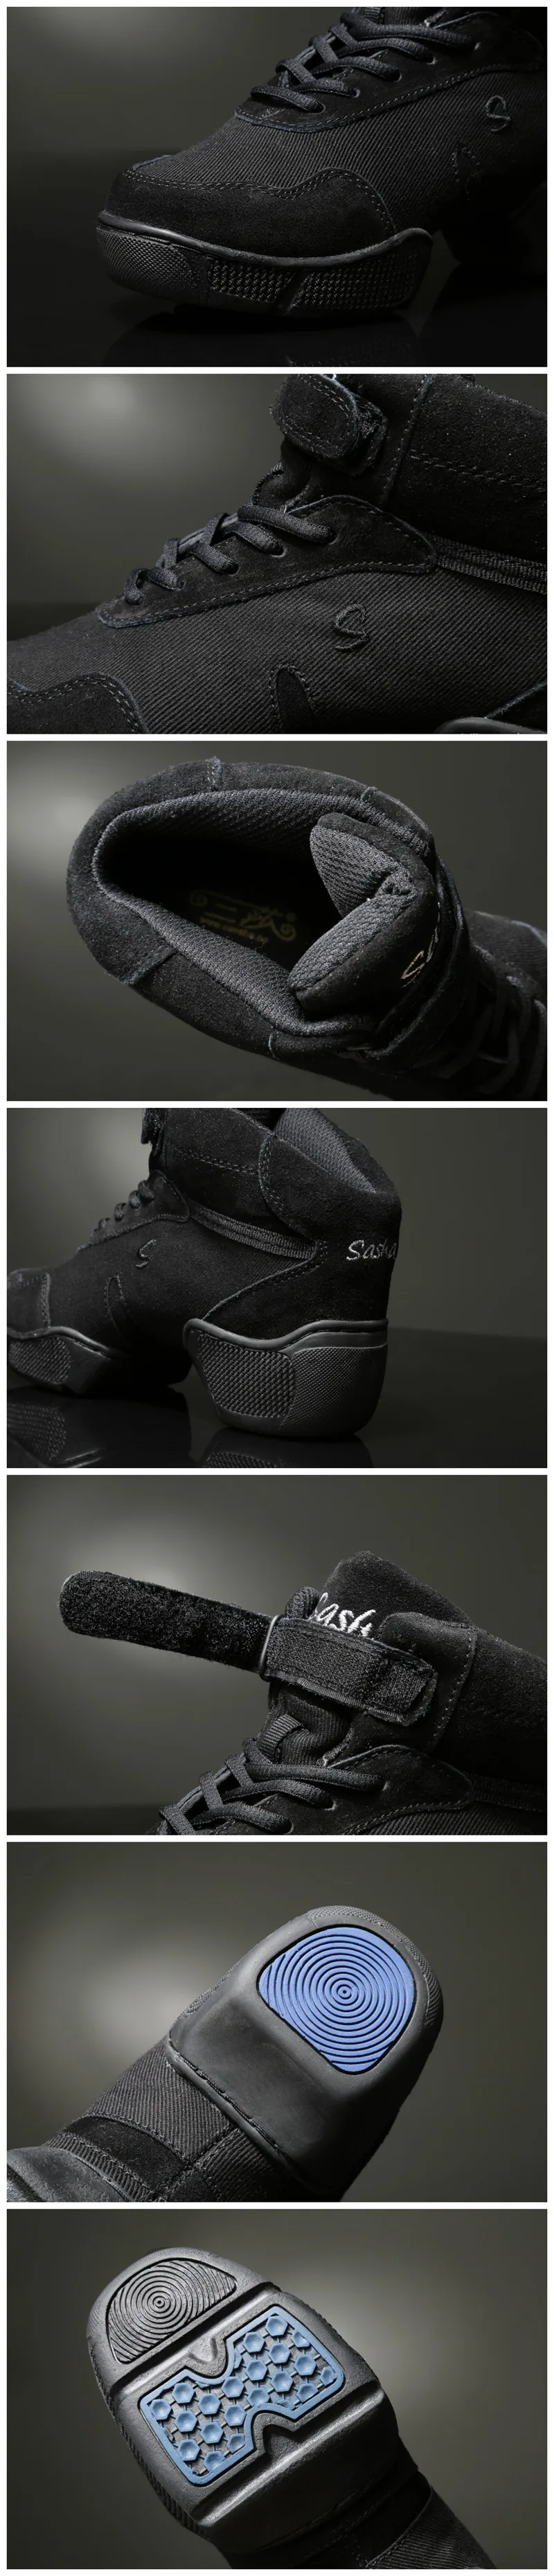 Дышащие черные туфли cancas современный Танцы Спортивная обувь для женщины джаз Обувь для танцев Zapatilla de deporte ss-b256 Бесплатная доставка